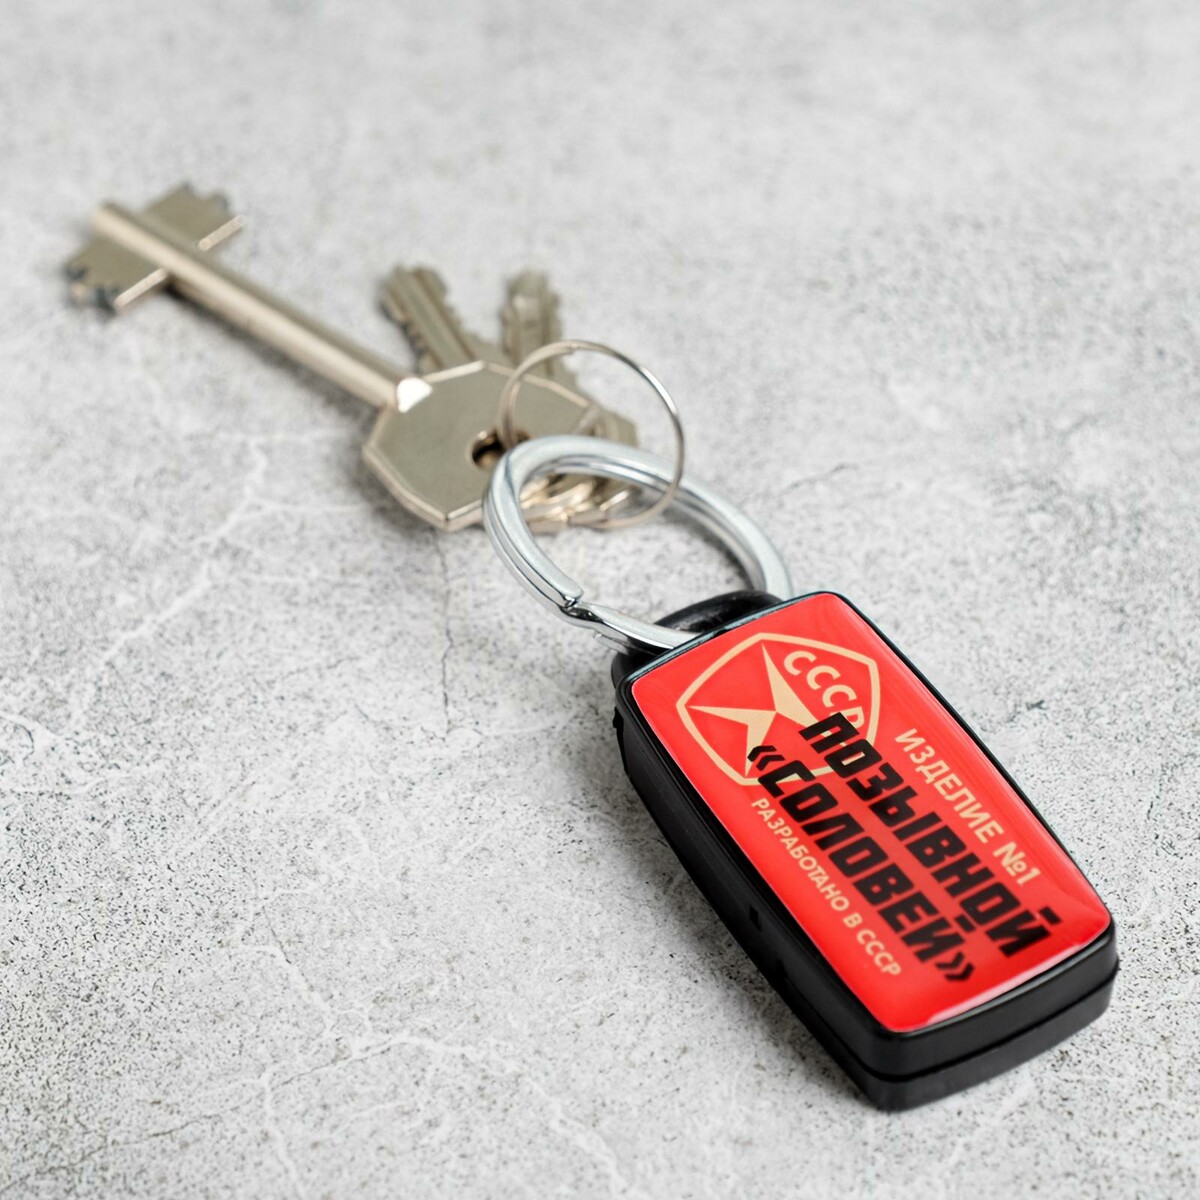 Брелок для поиска ключей No brand, цвет красный 0991164 - фото 2